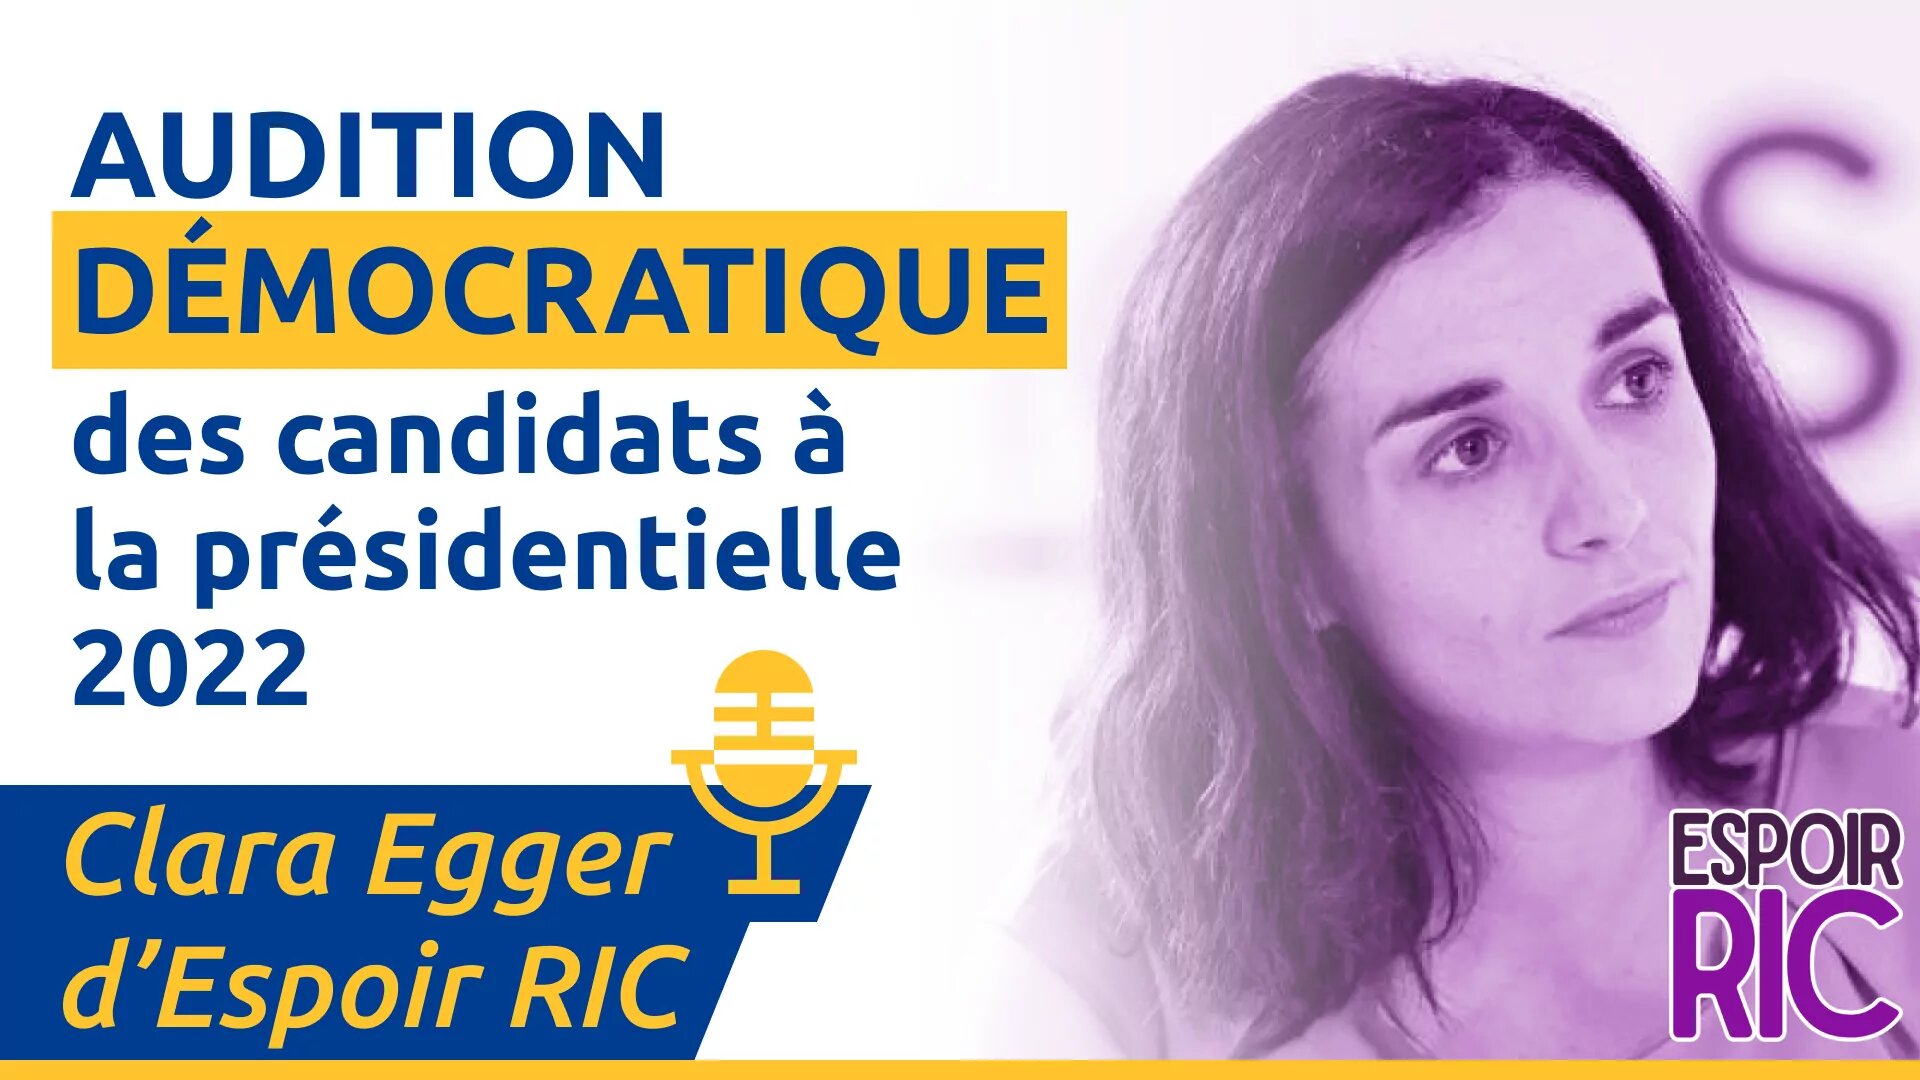 Clara Egger d’Espoir RIC – Audition démocratique des candidats à la présidentielle 2022